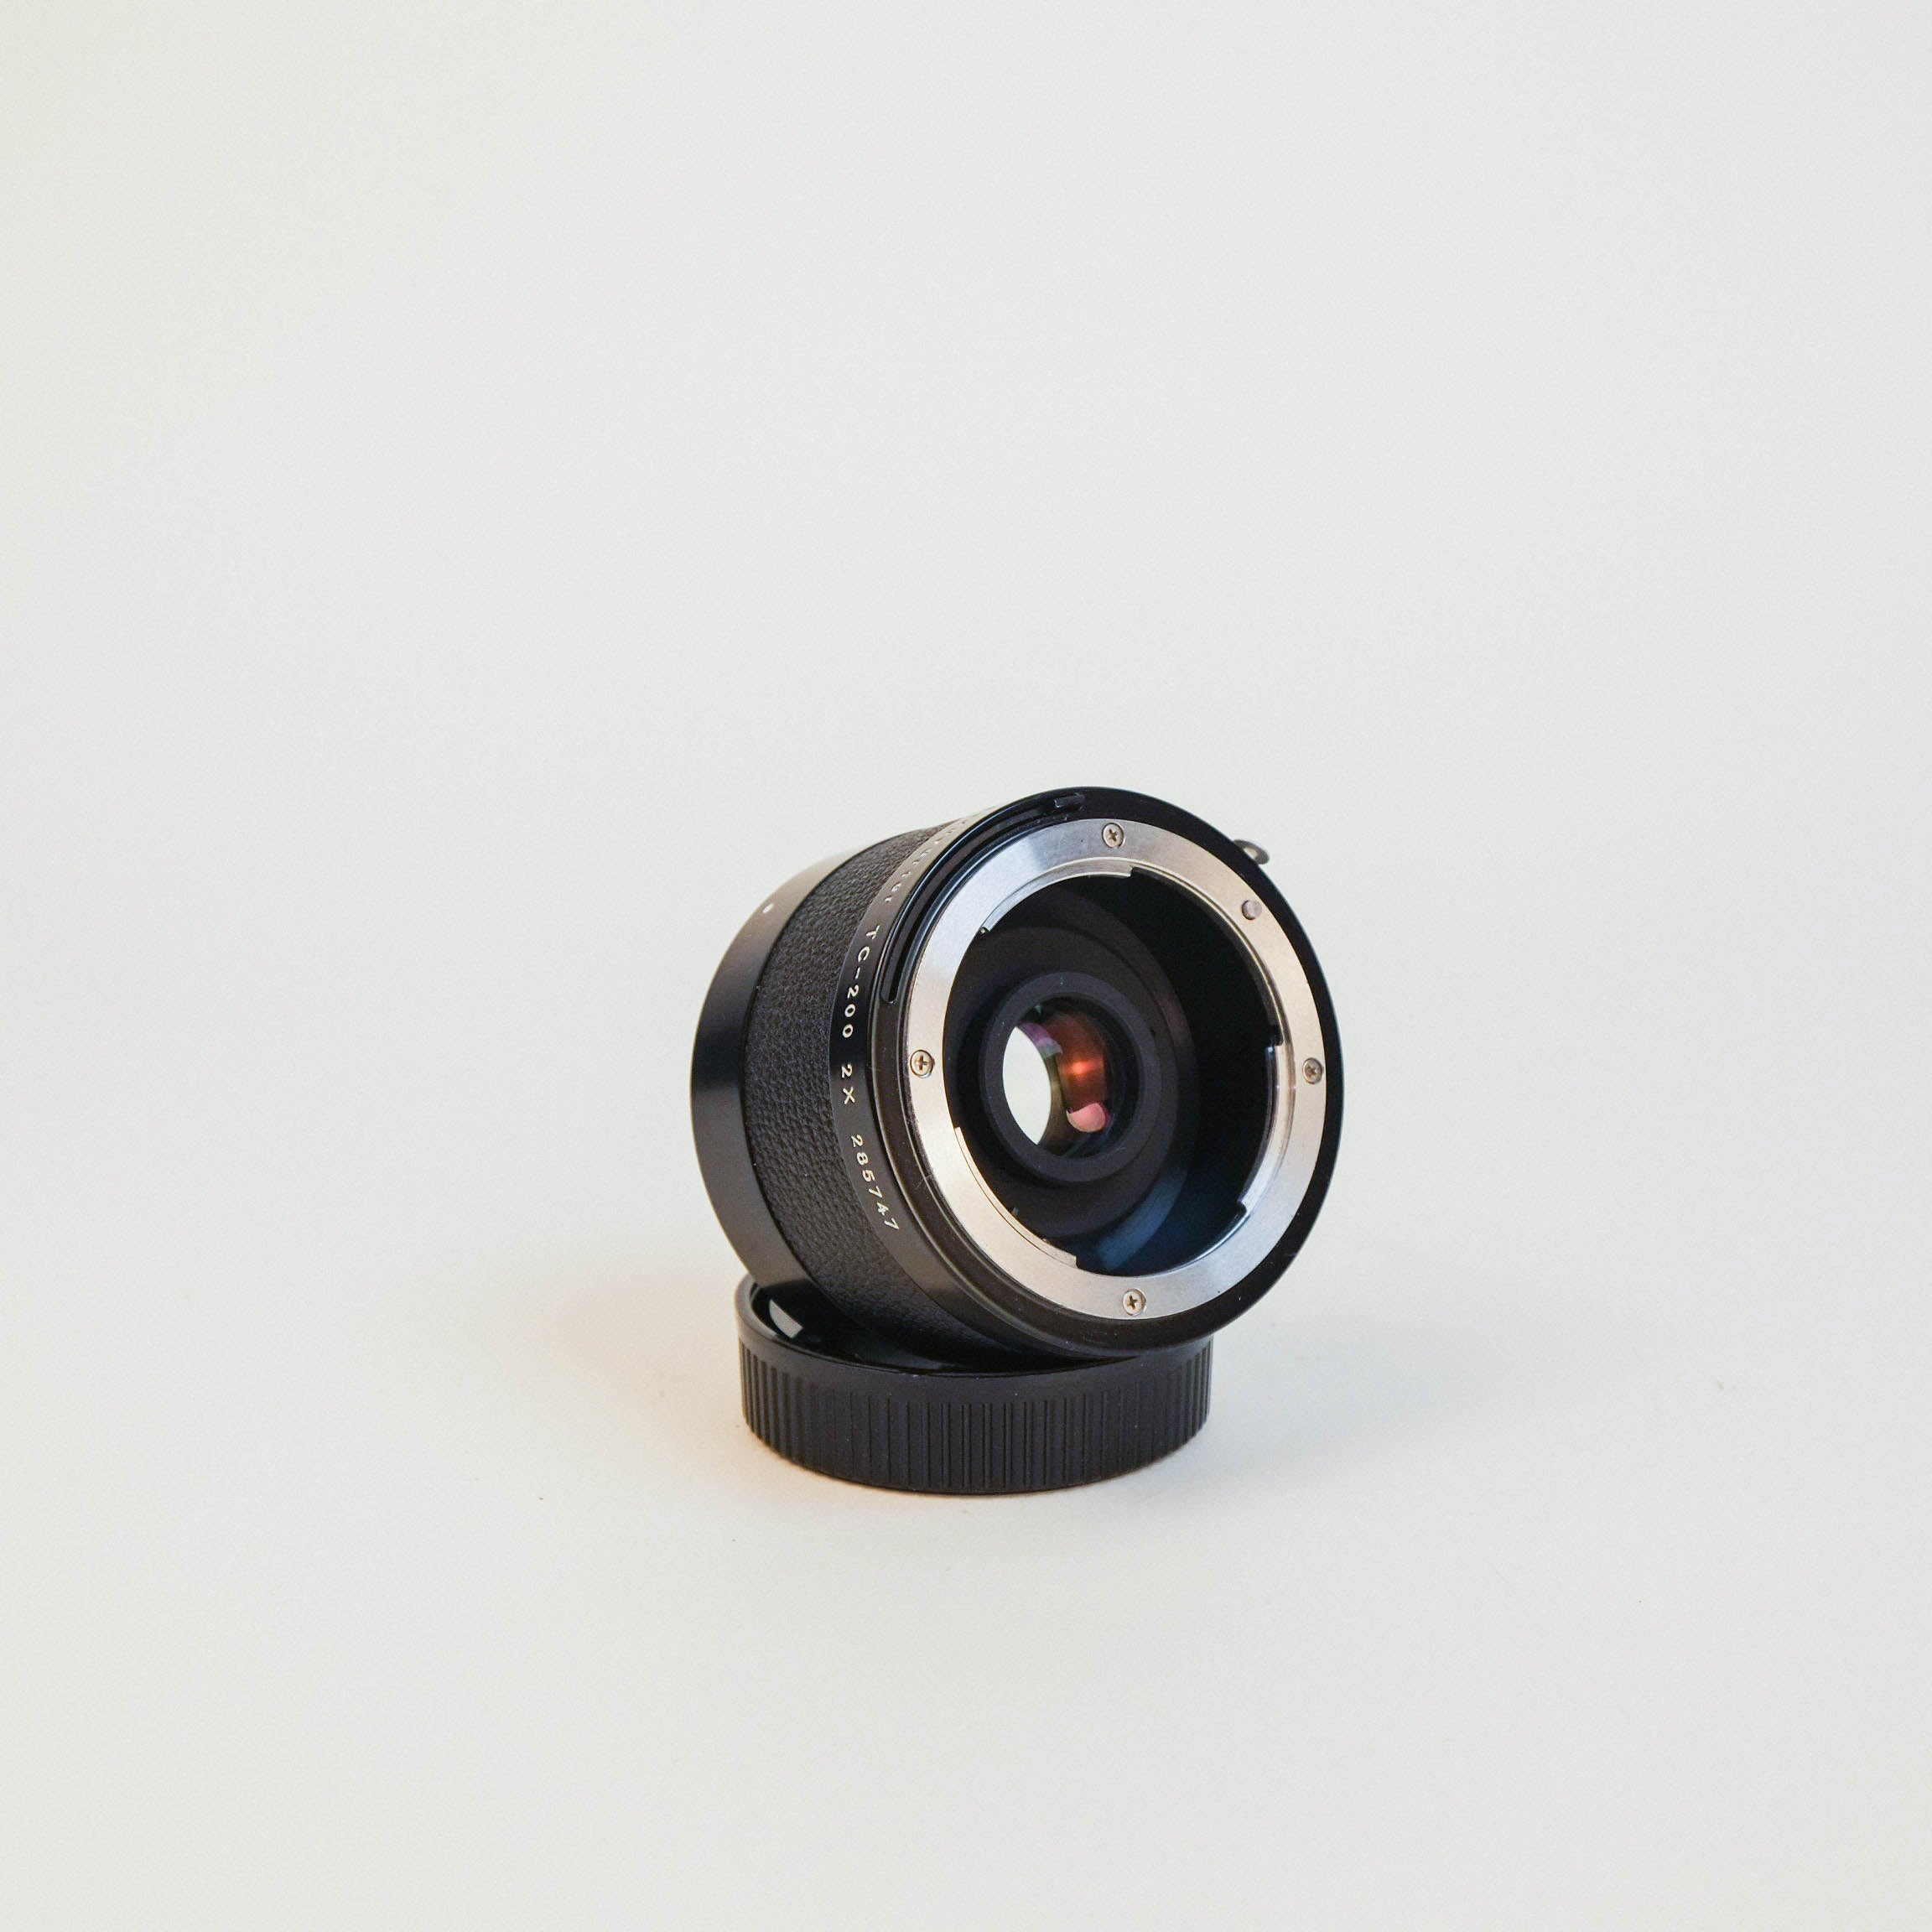 Nikon teleconverter TC-200 2X - レンズ(単焦点)